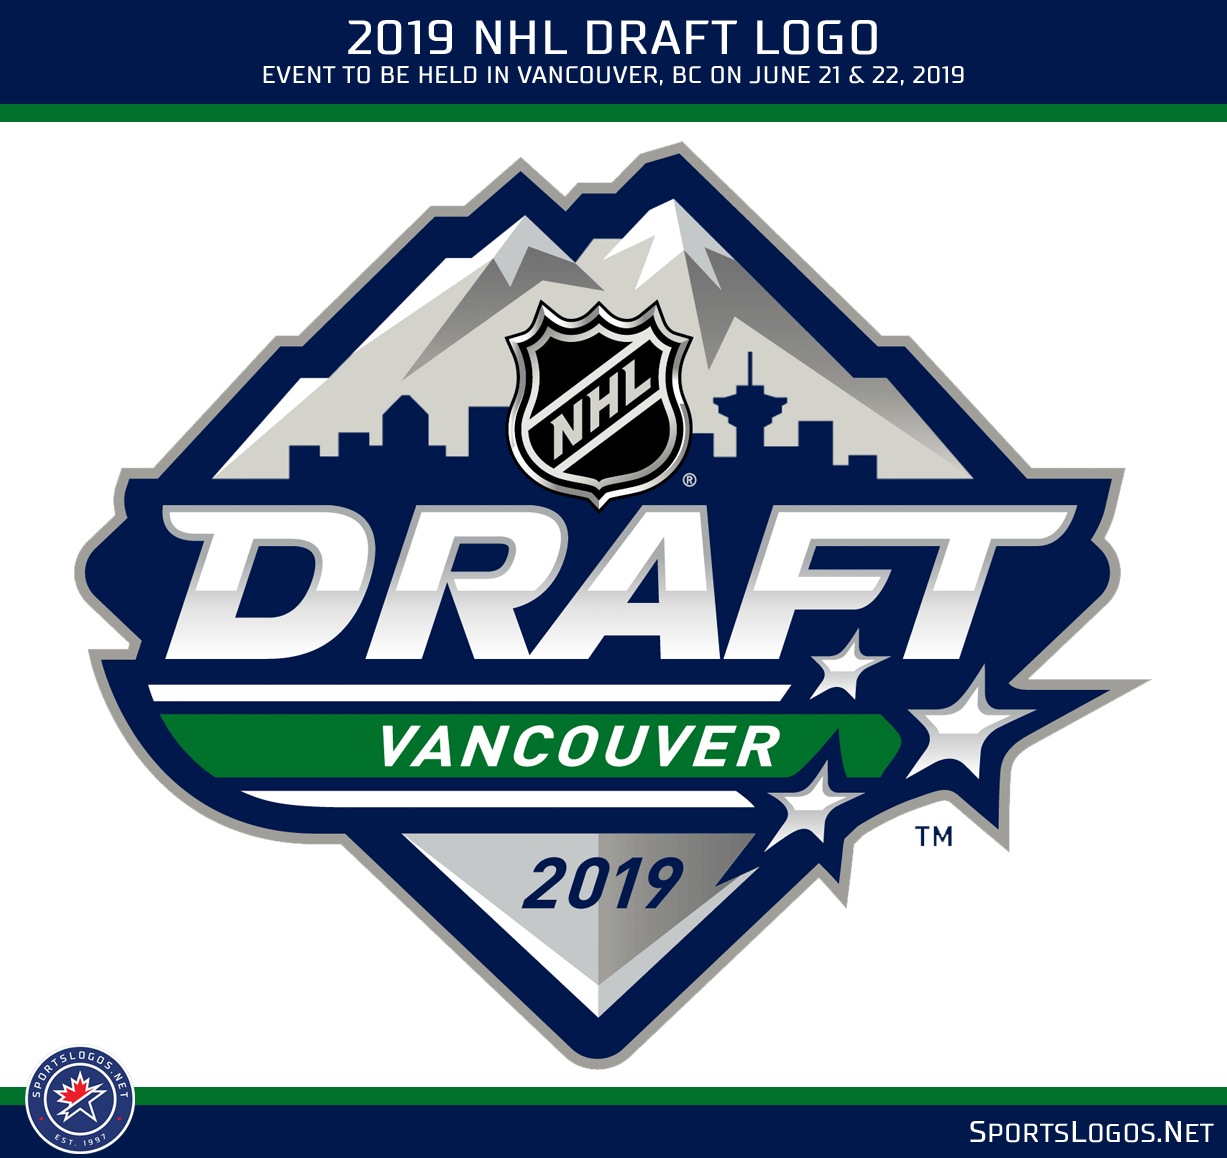 Draft Logo - Logo Released for 2019 NHL Draft in Vancouver. Chris Creamer's